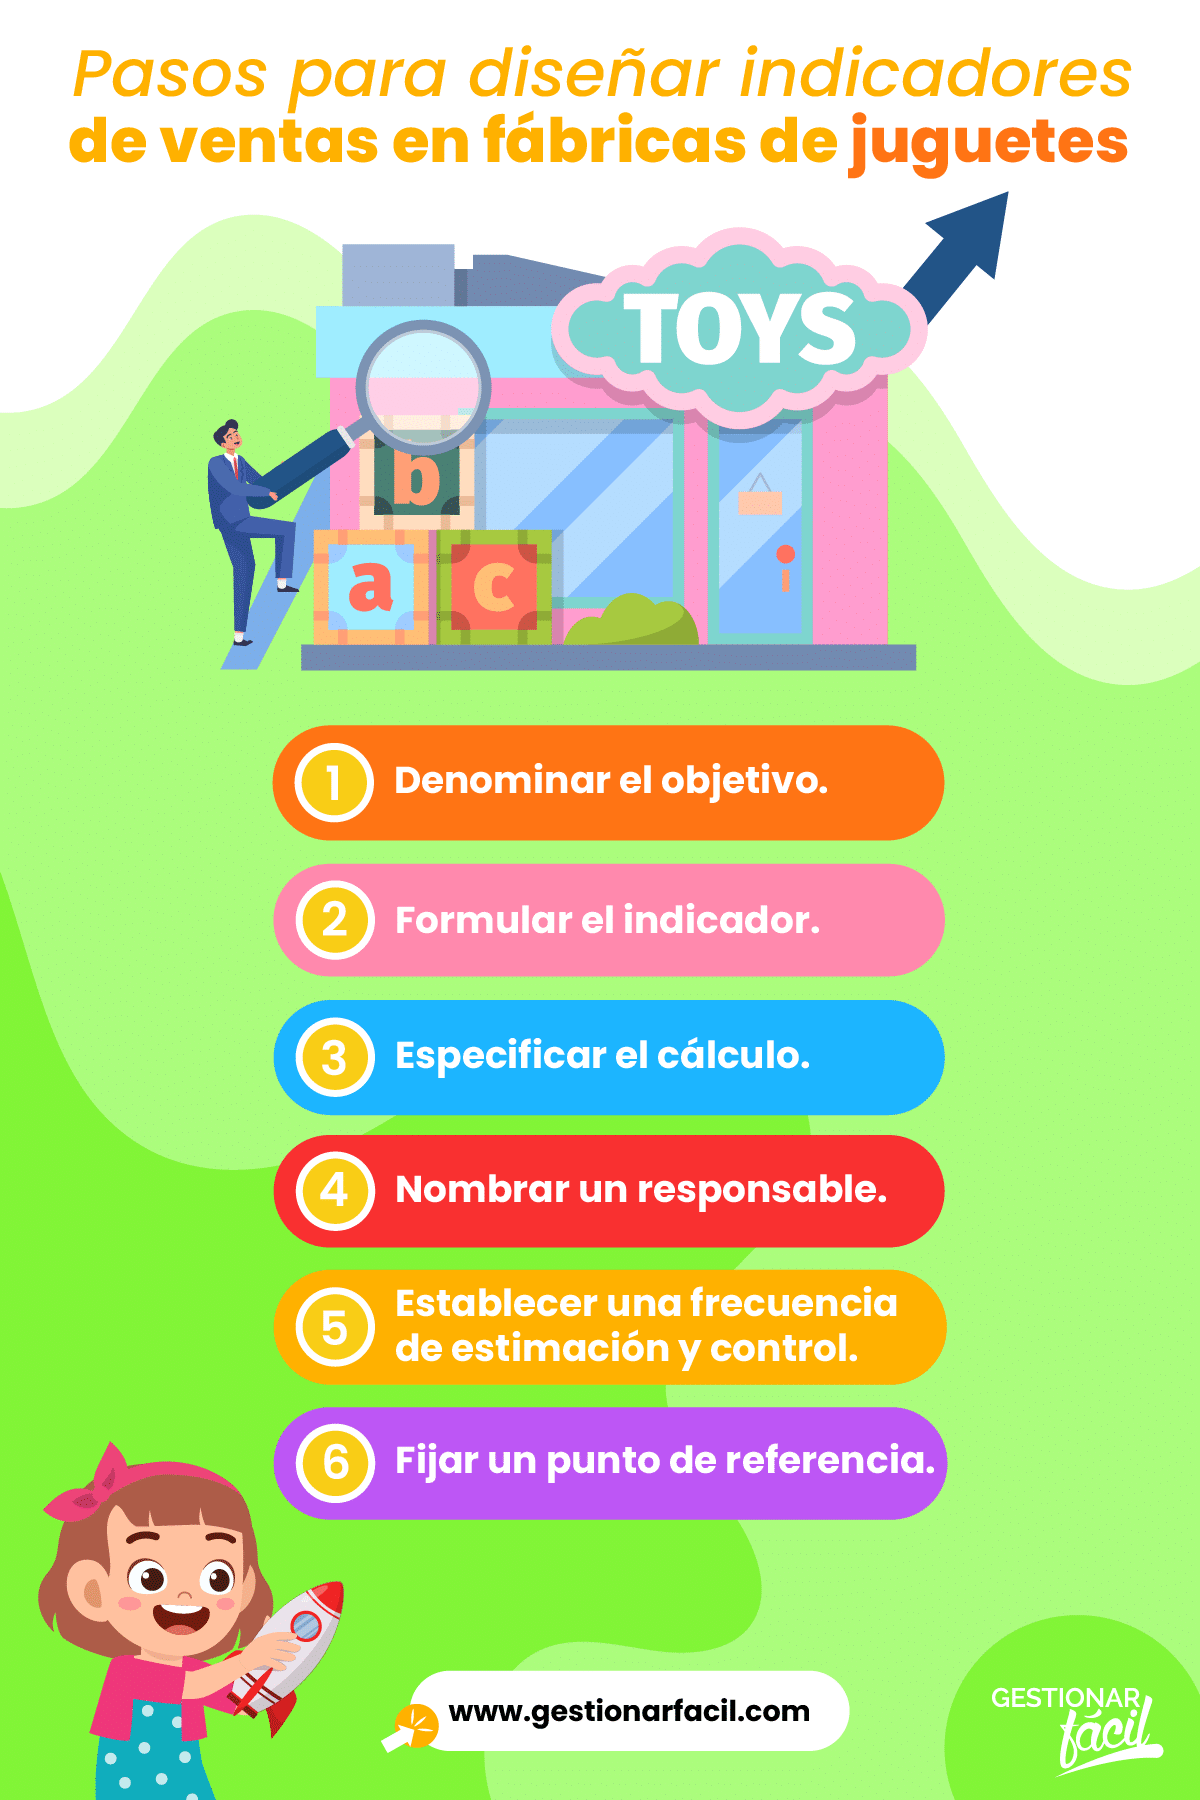 Diseño de indicadores de ventas en fábricas de juguetes.